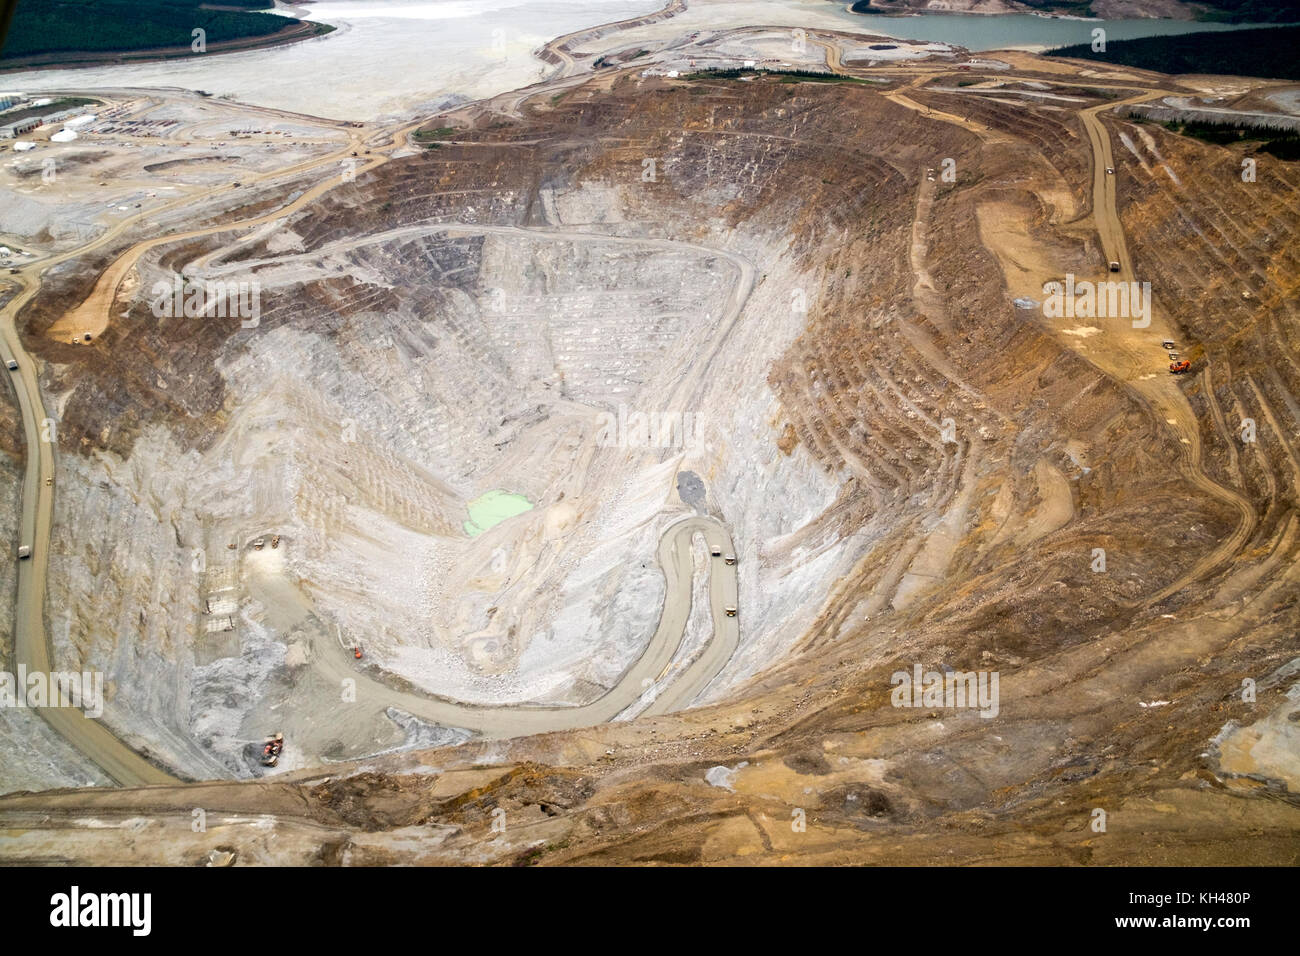 Ein Luftbild der grossen Fort Knox gold mine, nördlich von Fairbanks, Alaska. Diese open-pit Gold Mining Operation ist das größte seiner Art in al Stockfoto